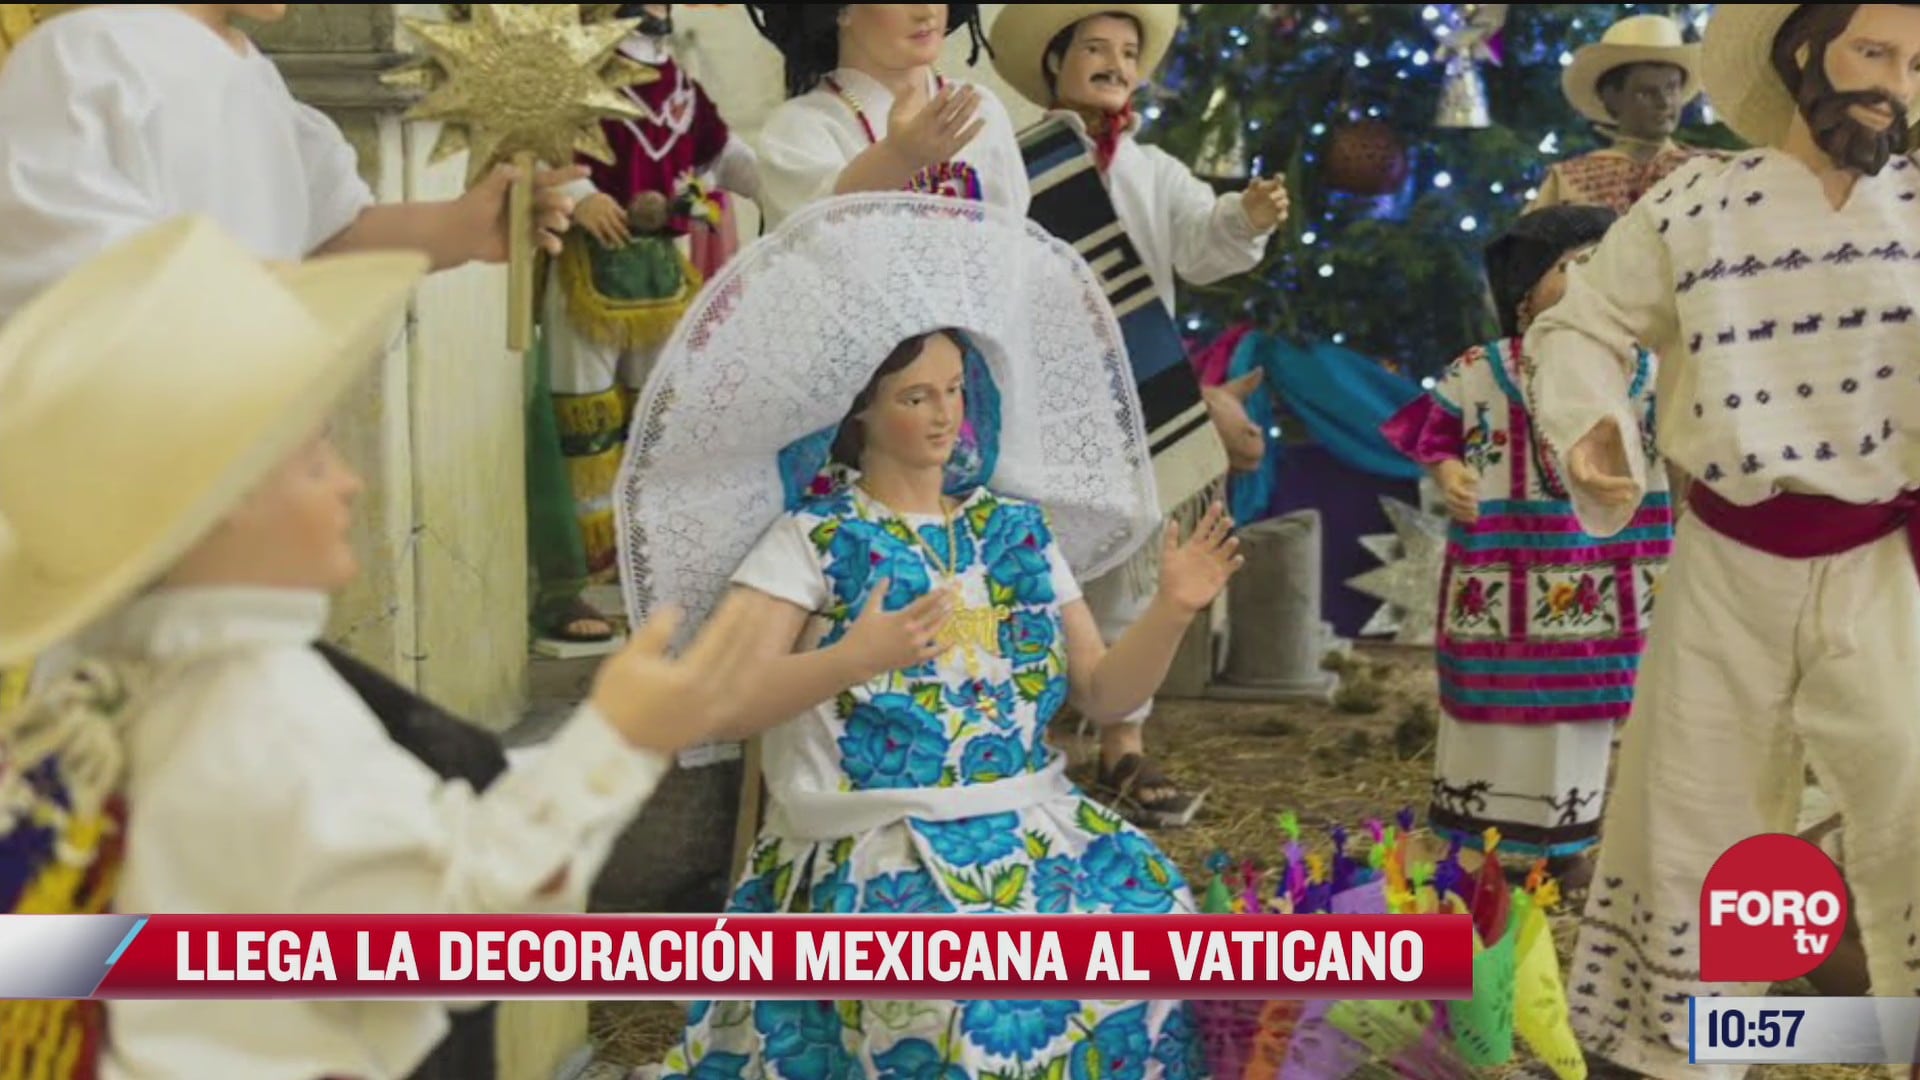 arboles navidenos y belenes del vaticano son adornados con artesanias mexicanas